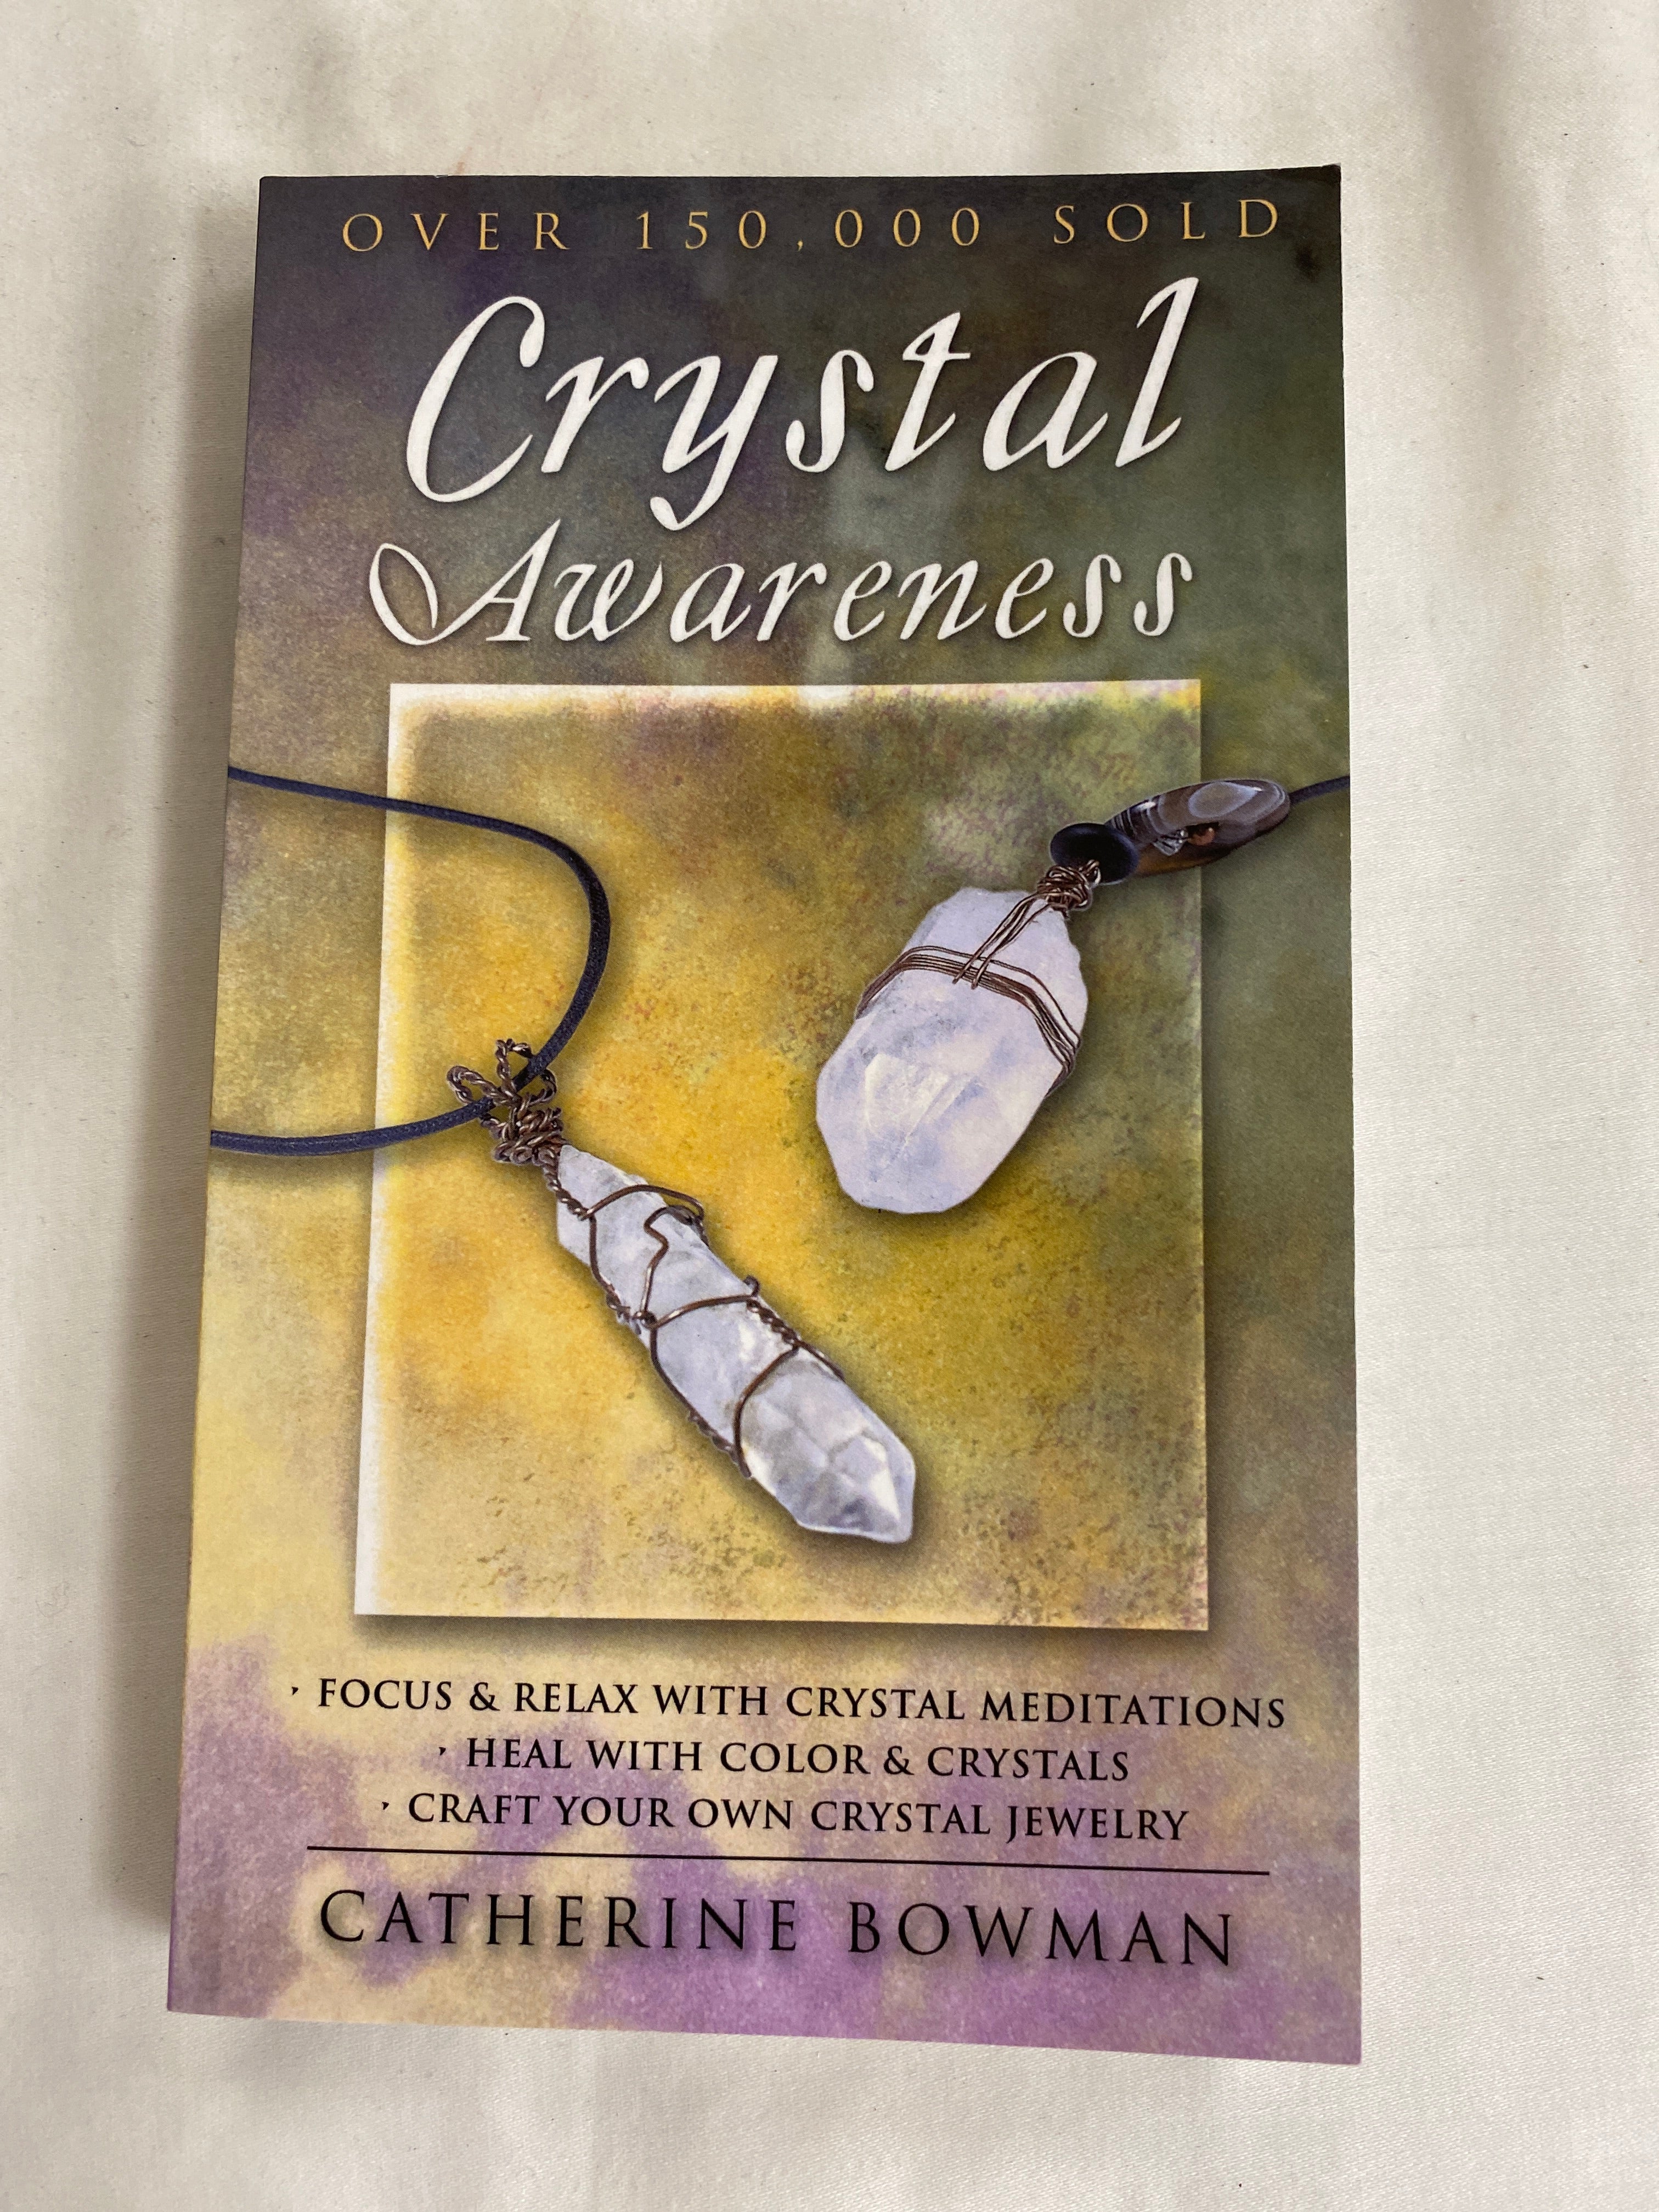 Crystal Awareness